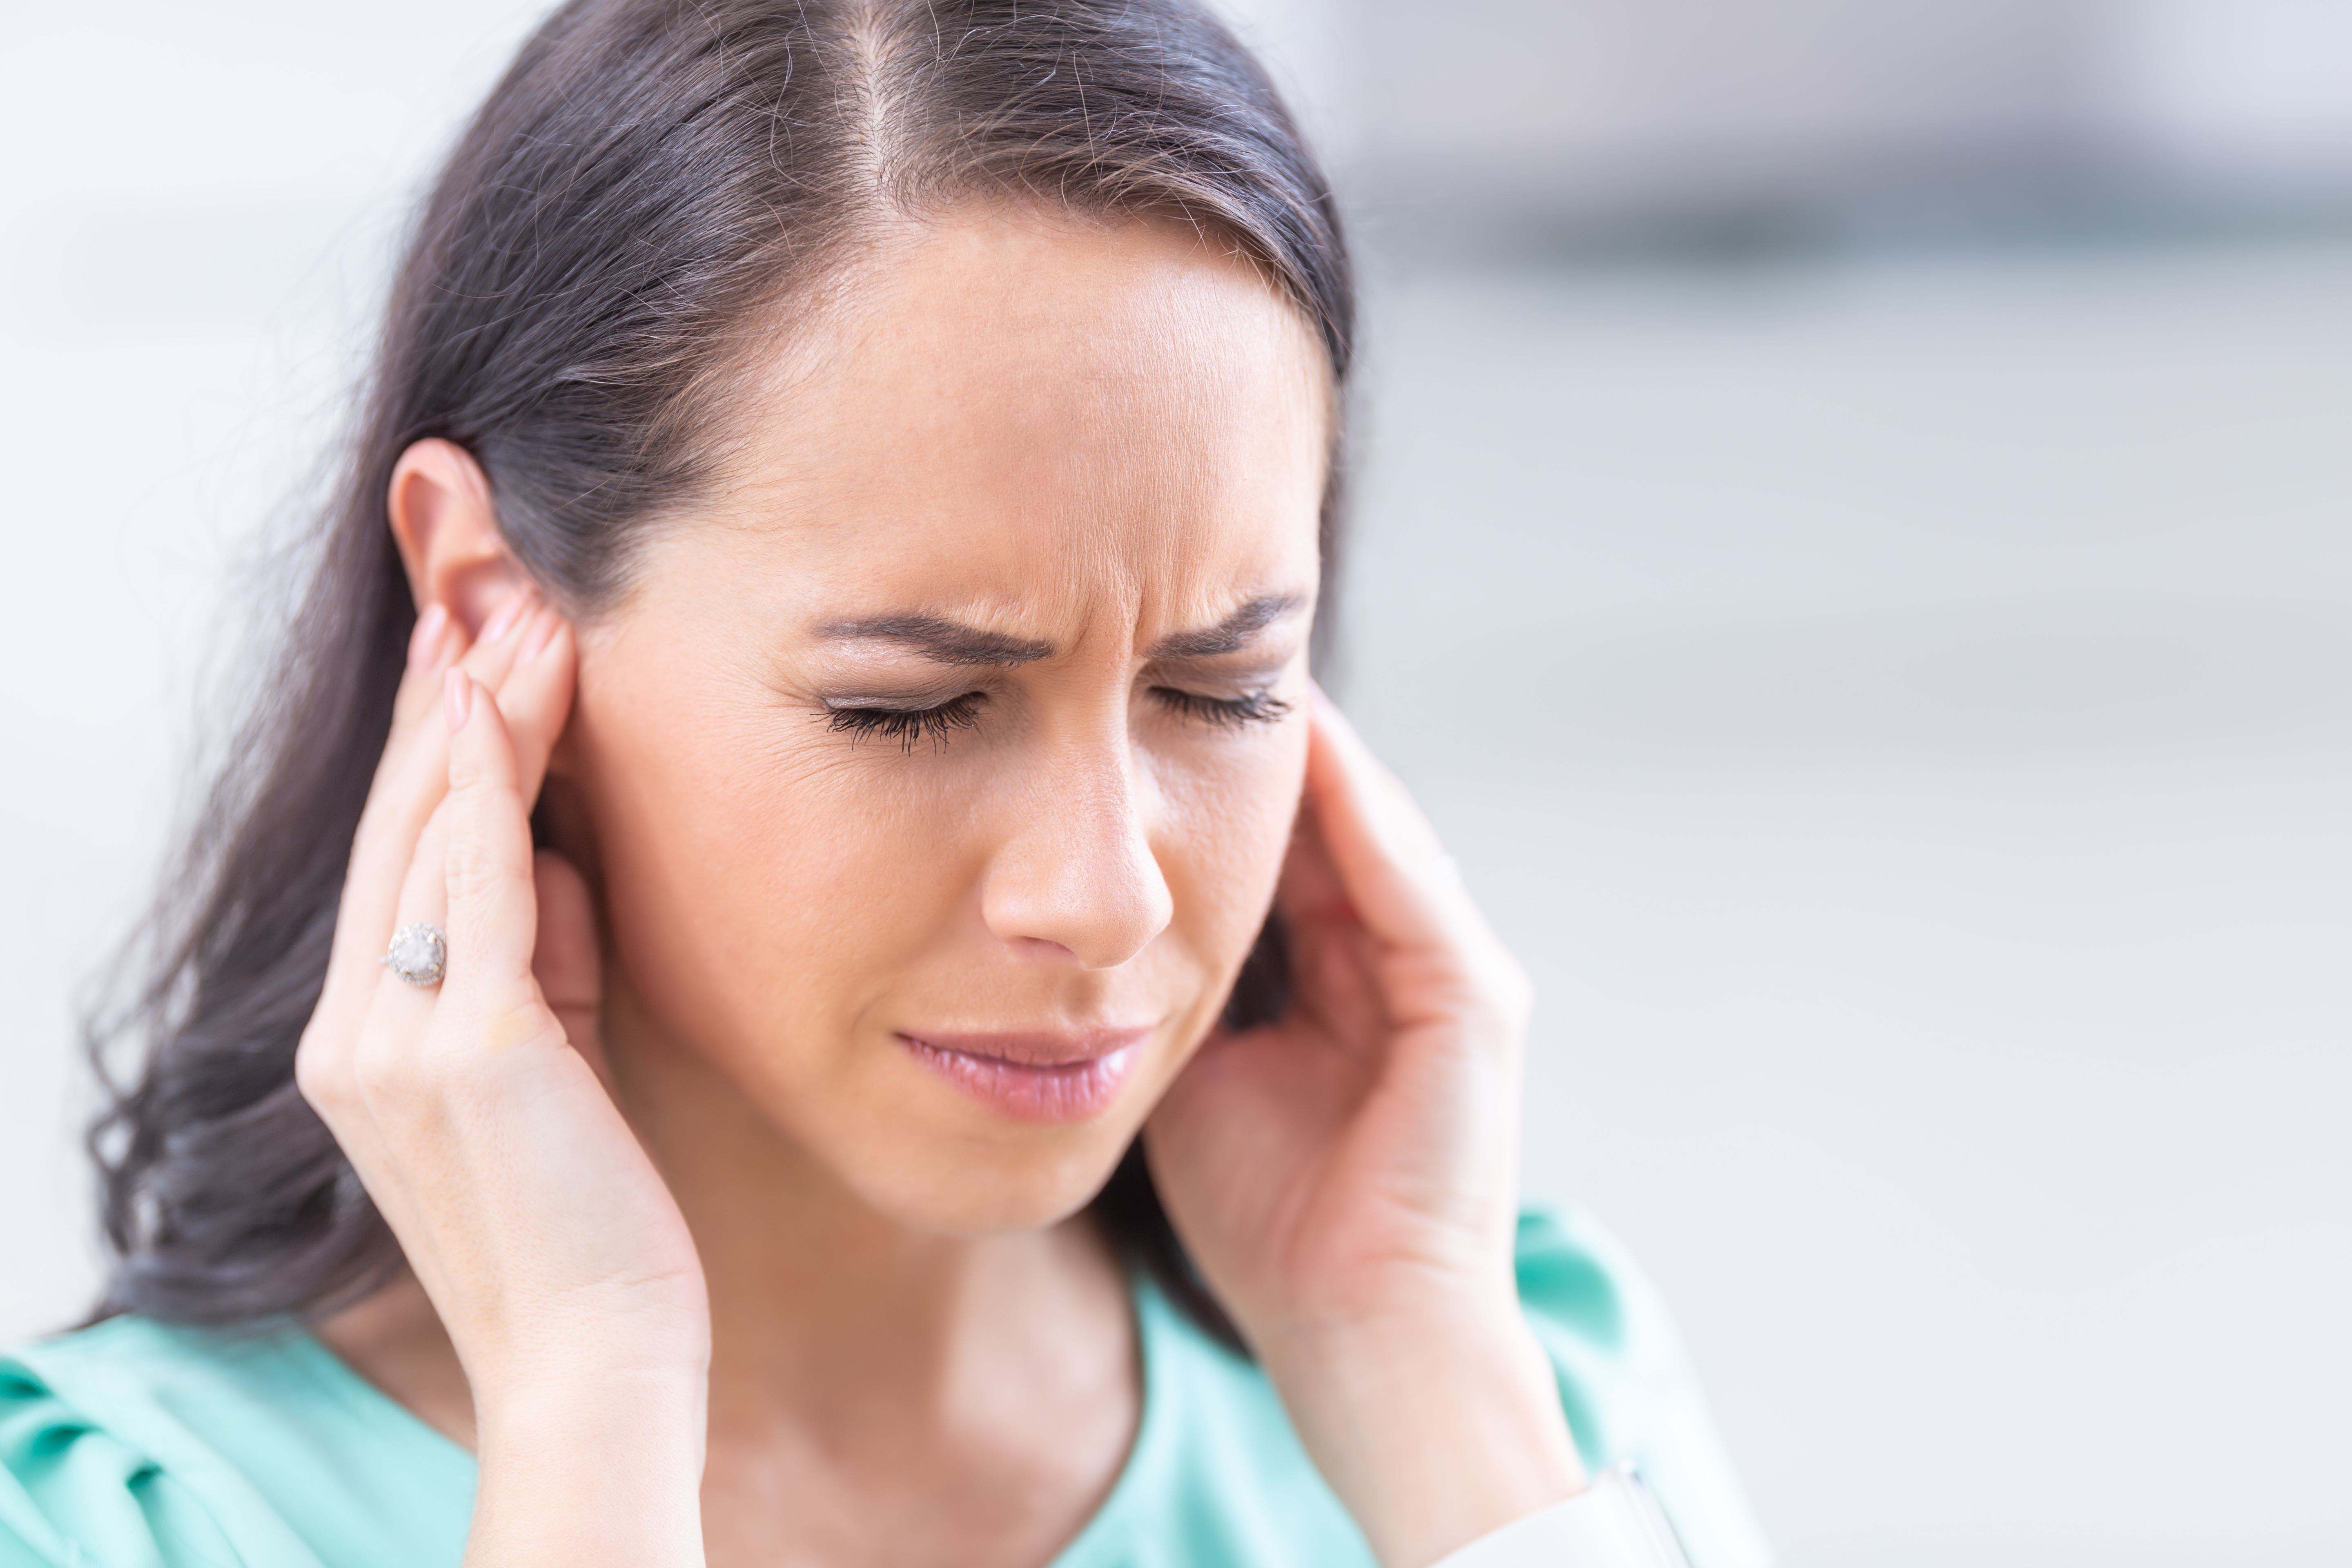 Ces symptômes affectant les oreilles, signalés par de nombreux patients, notamment de perte auditive, d’acouphènes et de bourdonnements dans les oreilles n'apparaissent pas significativement agravés avec la pandémie (Visuel Adobe Stock 326993165).